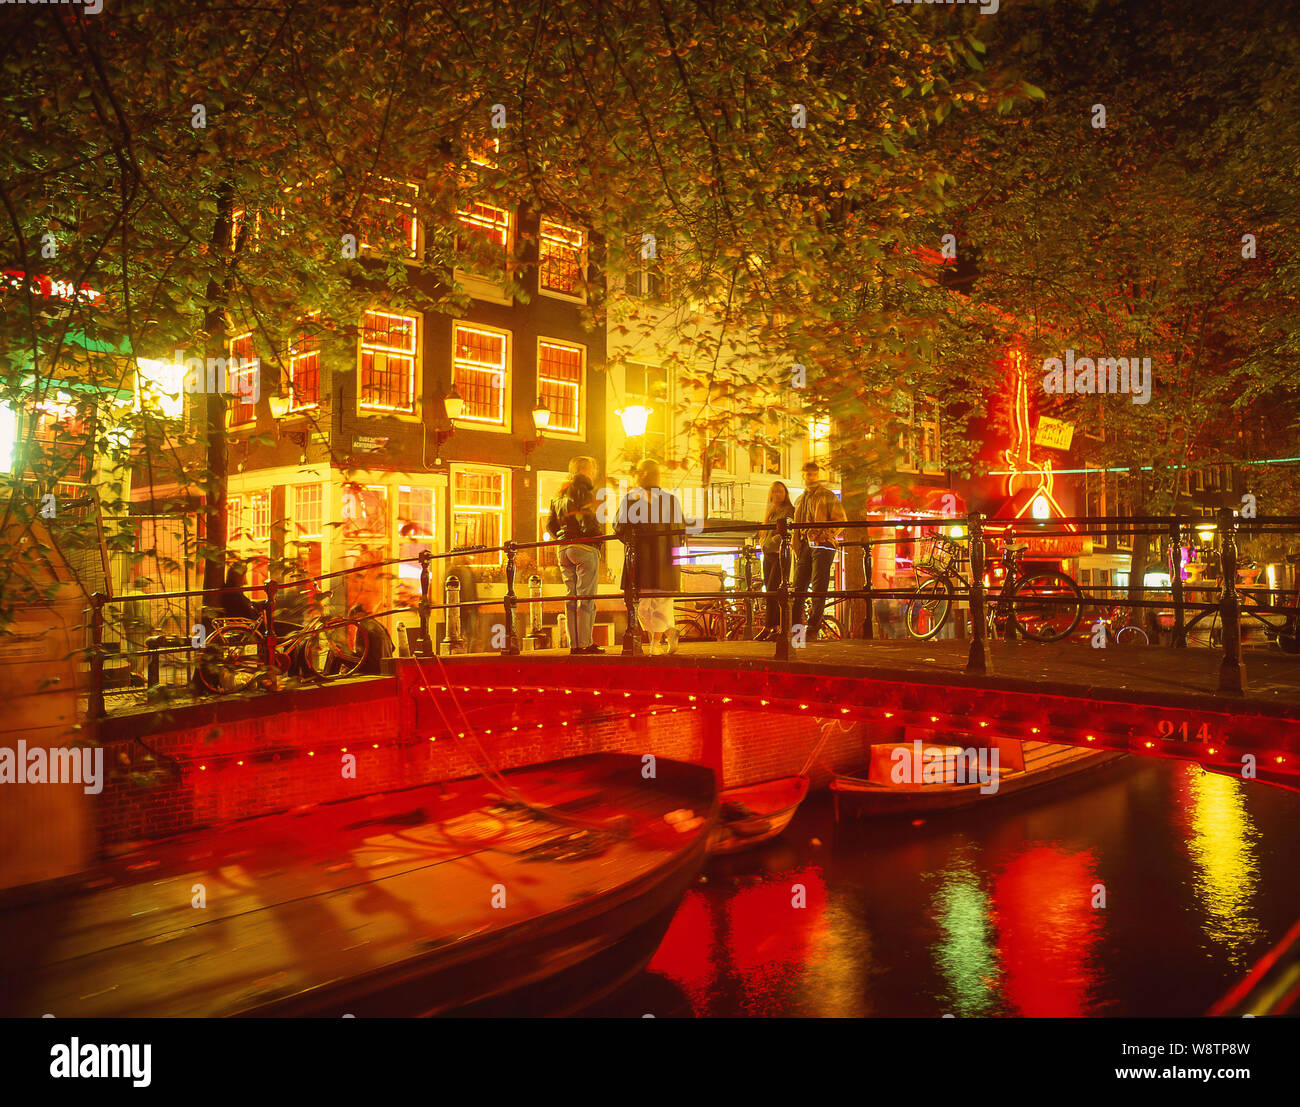 Ponte sul canale nel quartiere a luci rosse (de Wallen), Amsterdam, Olanda settentrionale. Regno dei Paesi Bassi Foto Stock